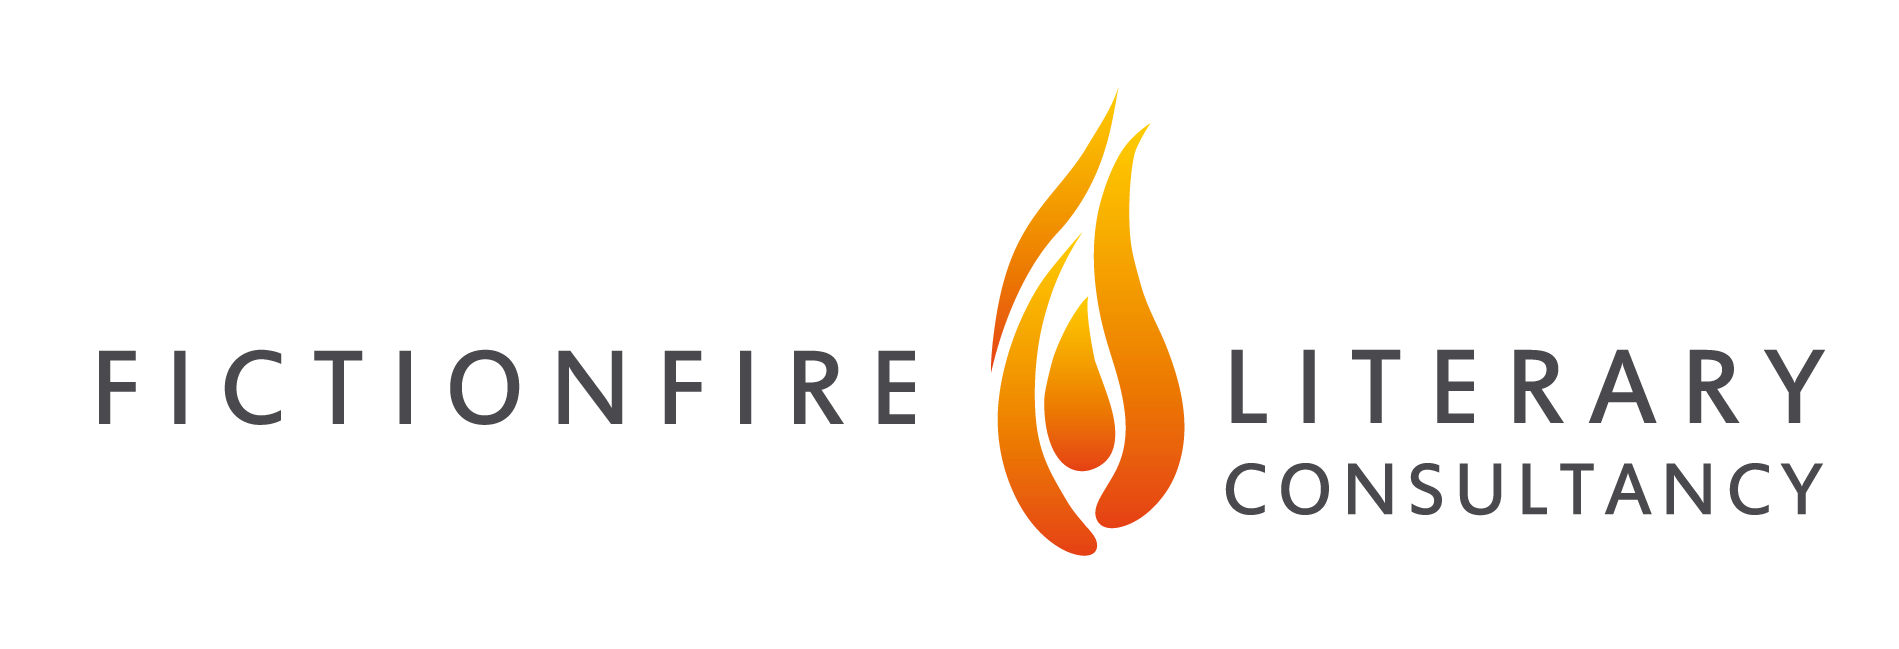 Main Fictionfire logo landscape.png